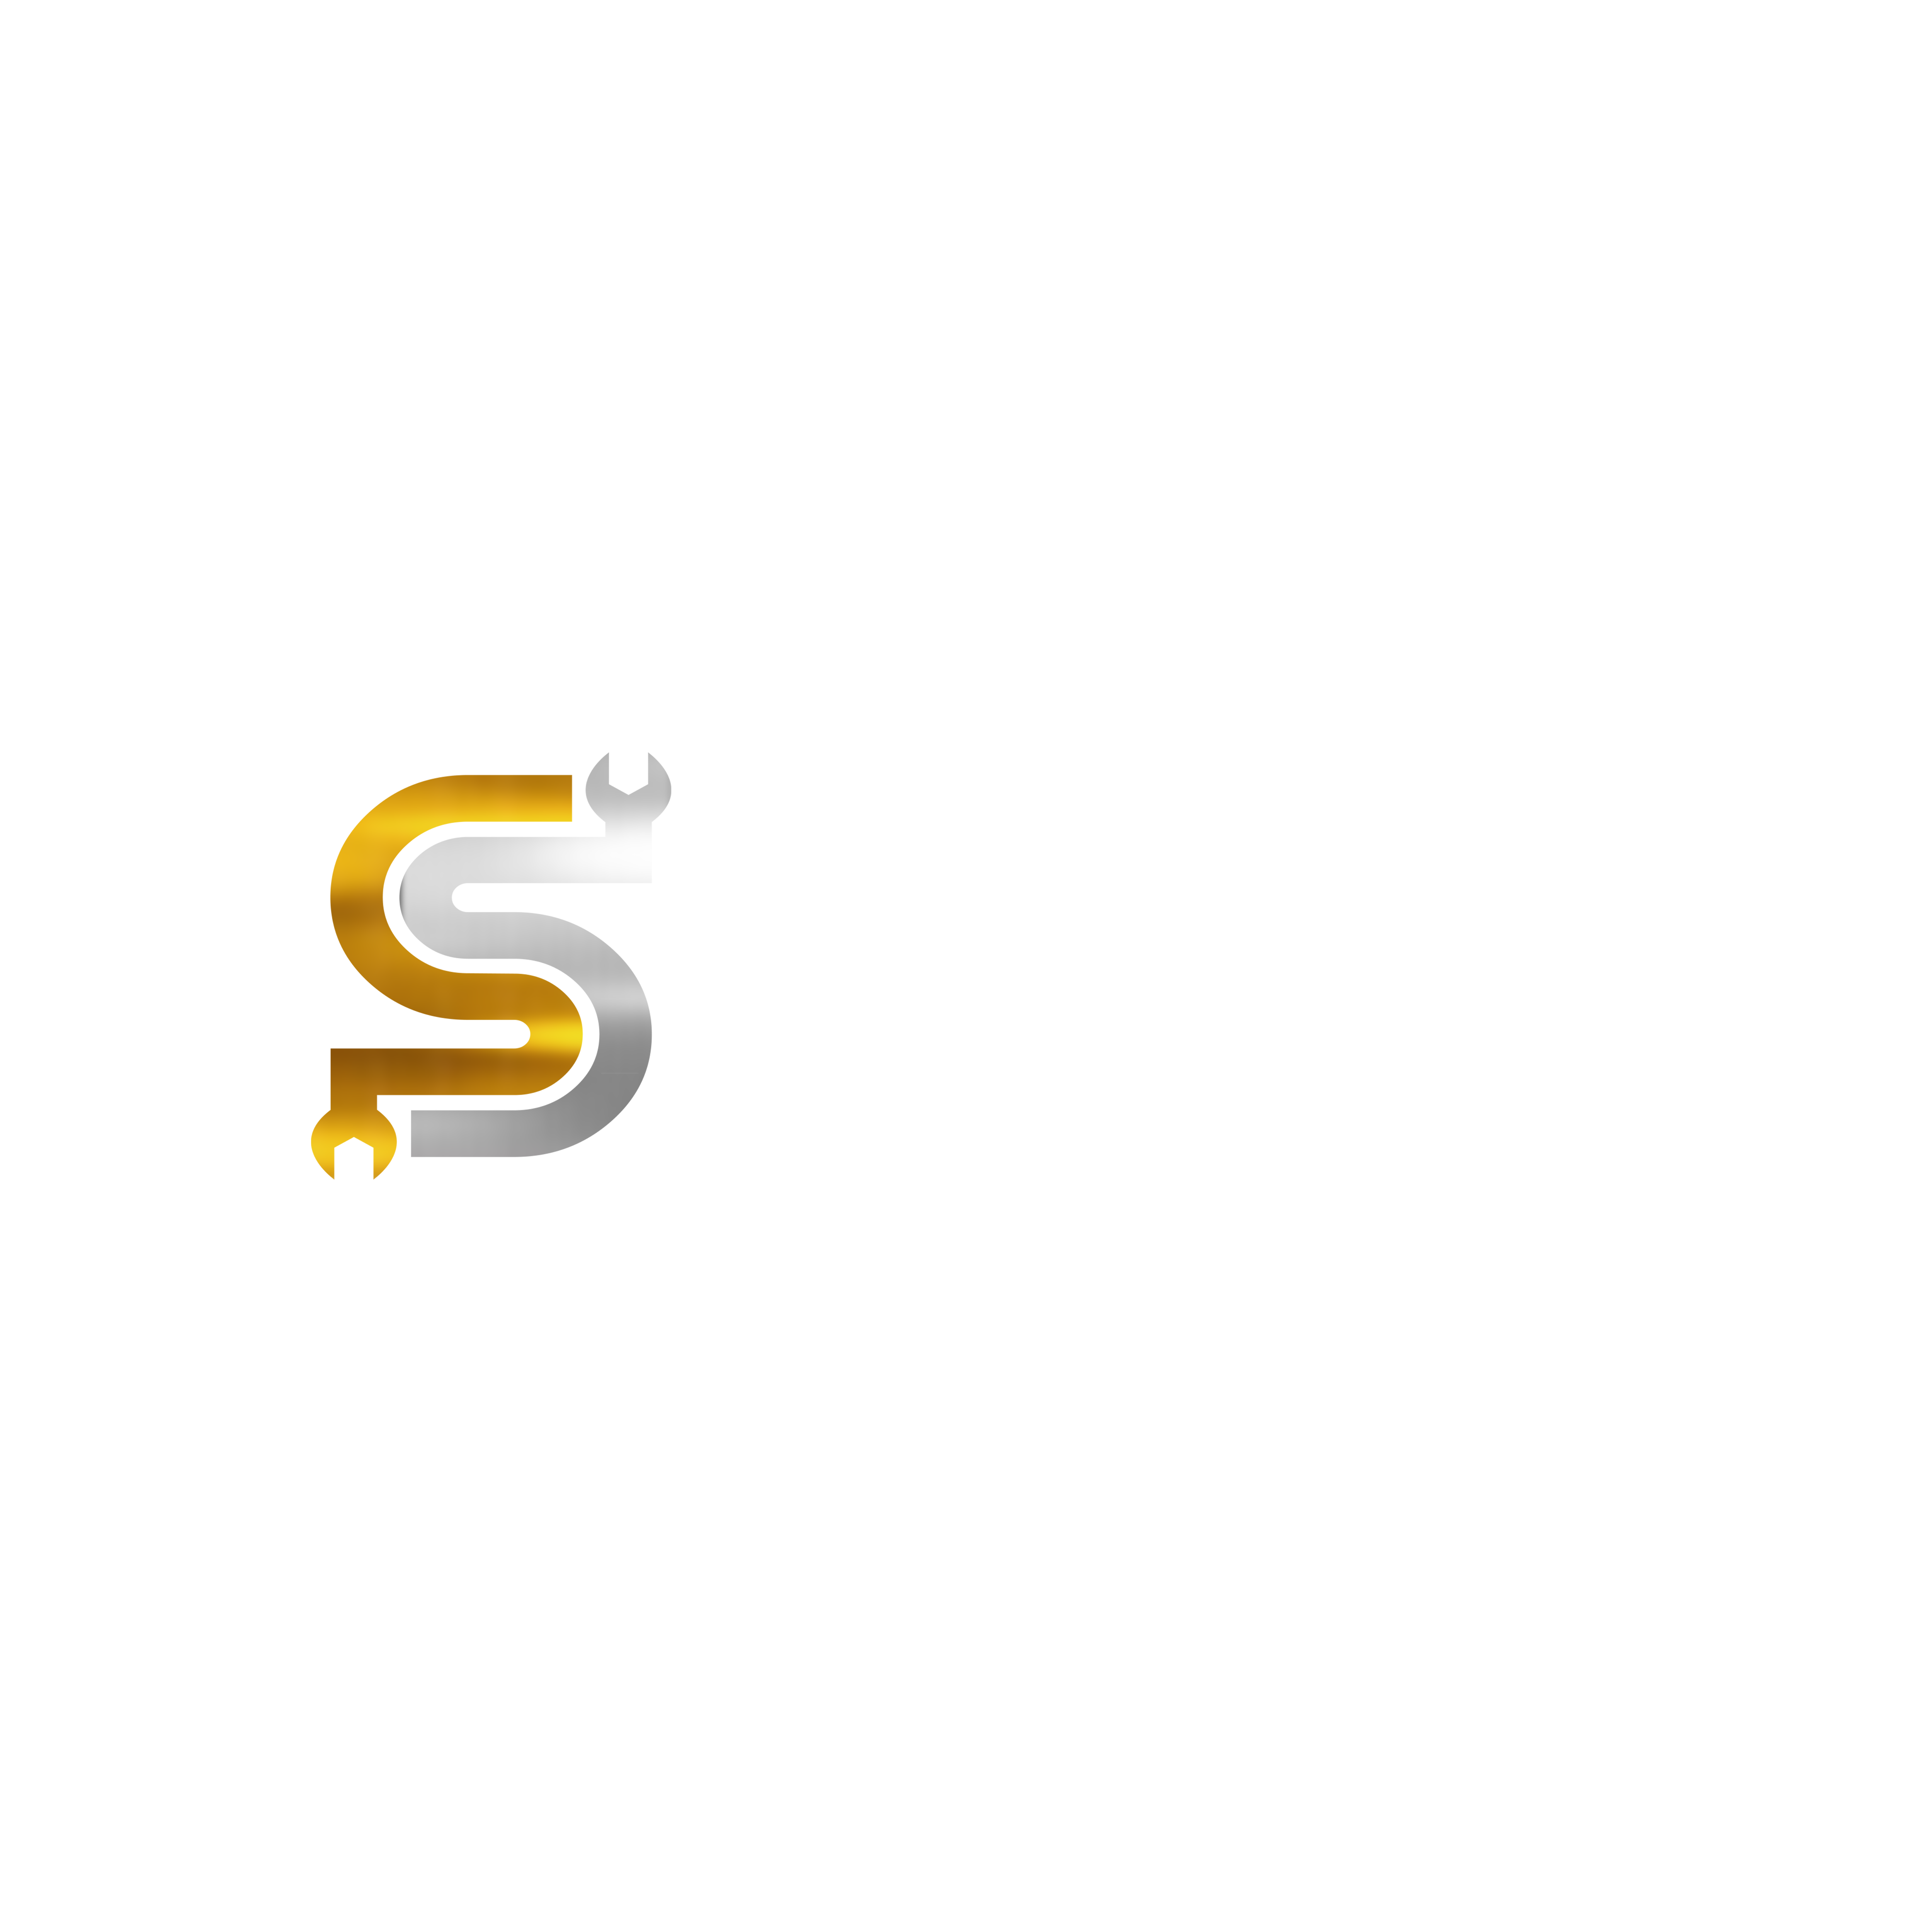 solid parts